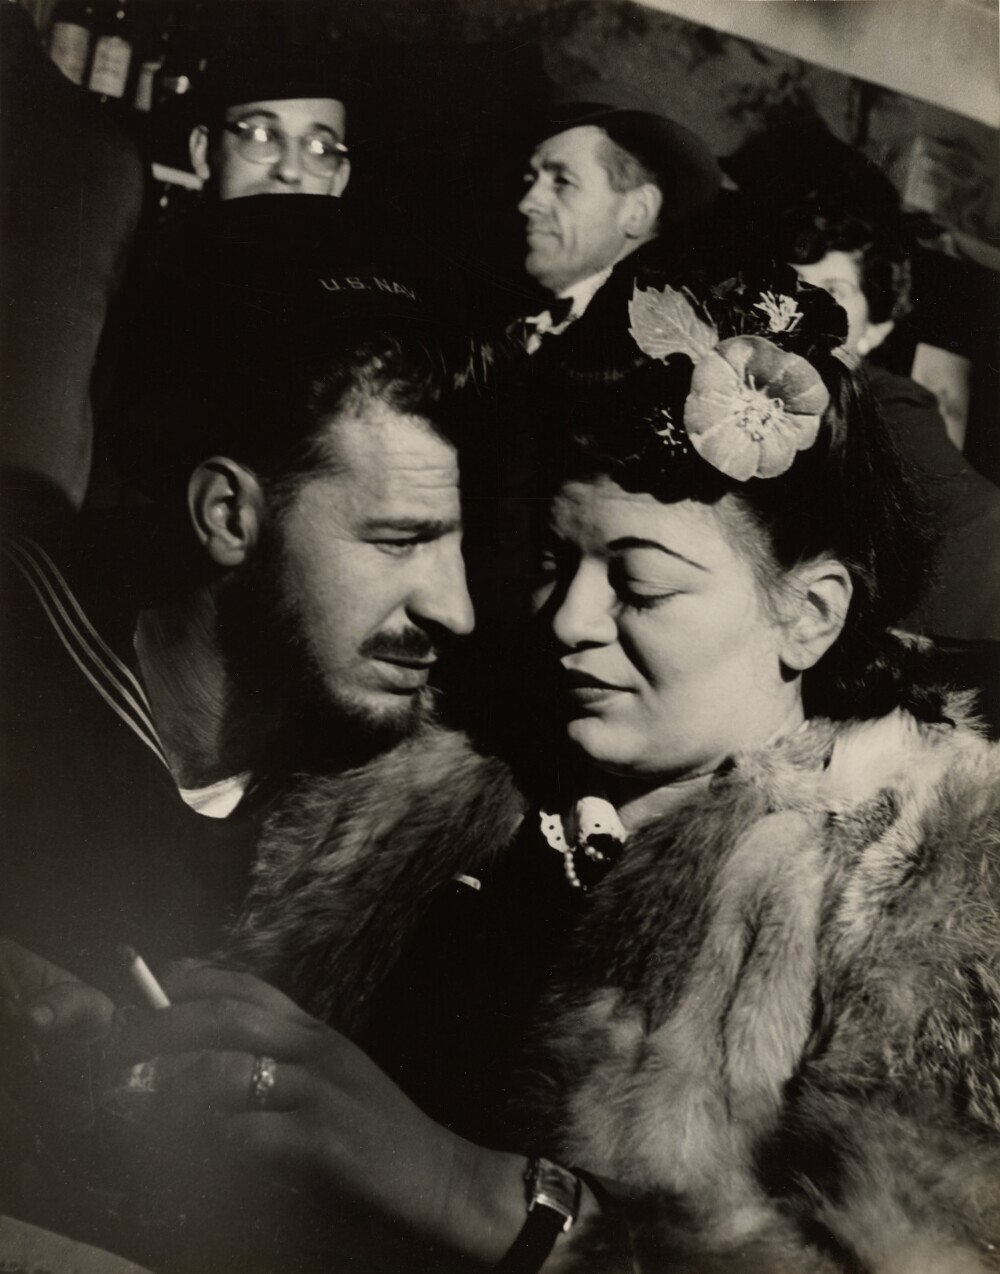 Моряк и девушка, бар Сэмми, Нью-Йорк, примерно 1945 год. Фотограф Лизетта Модел